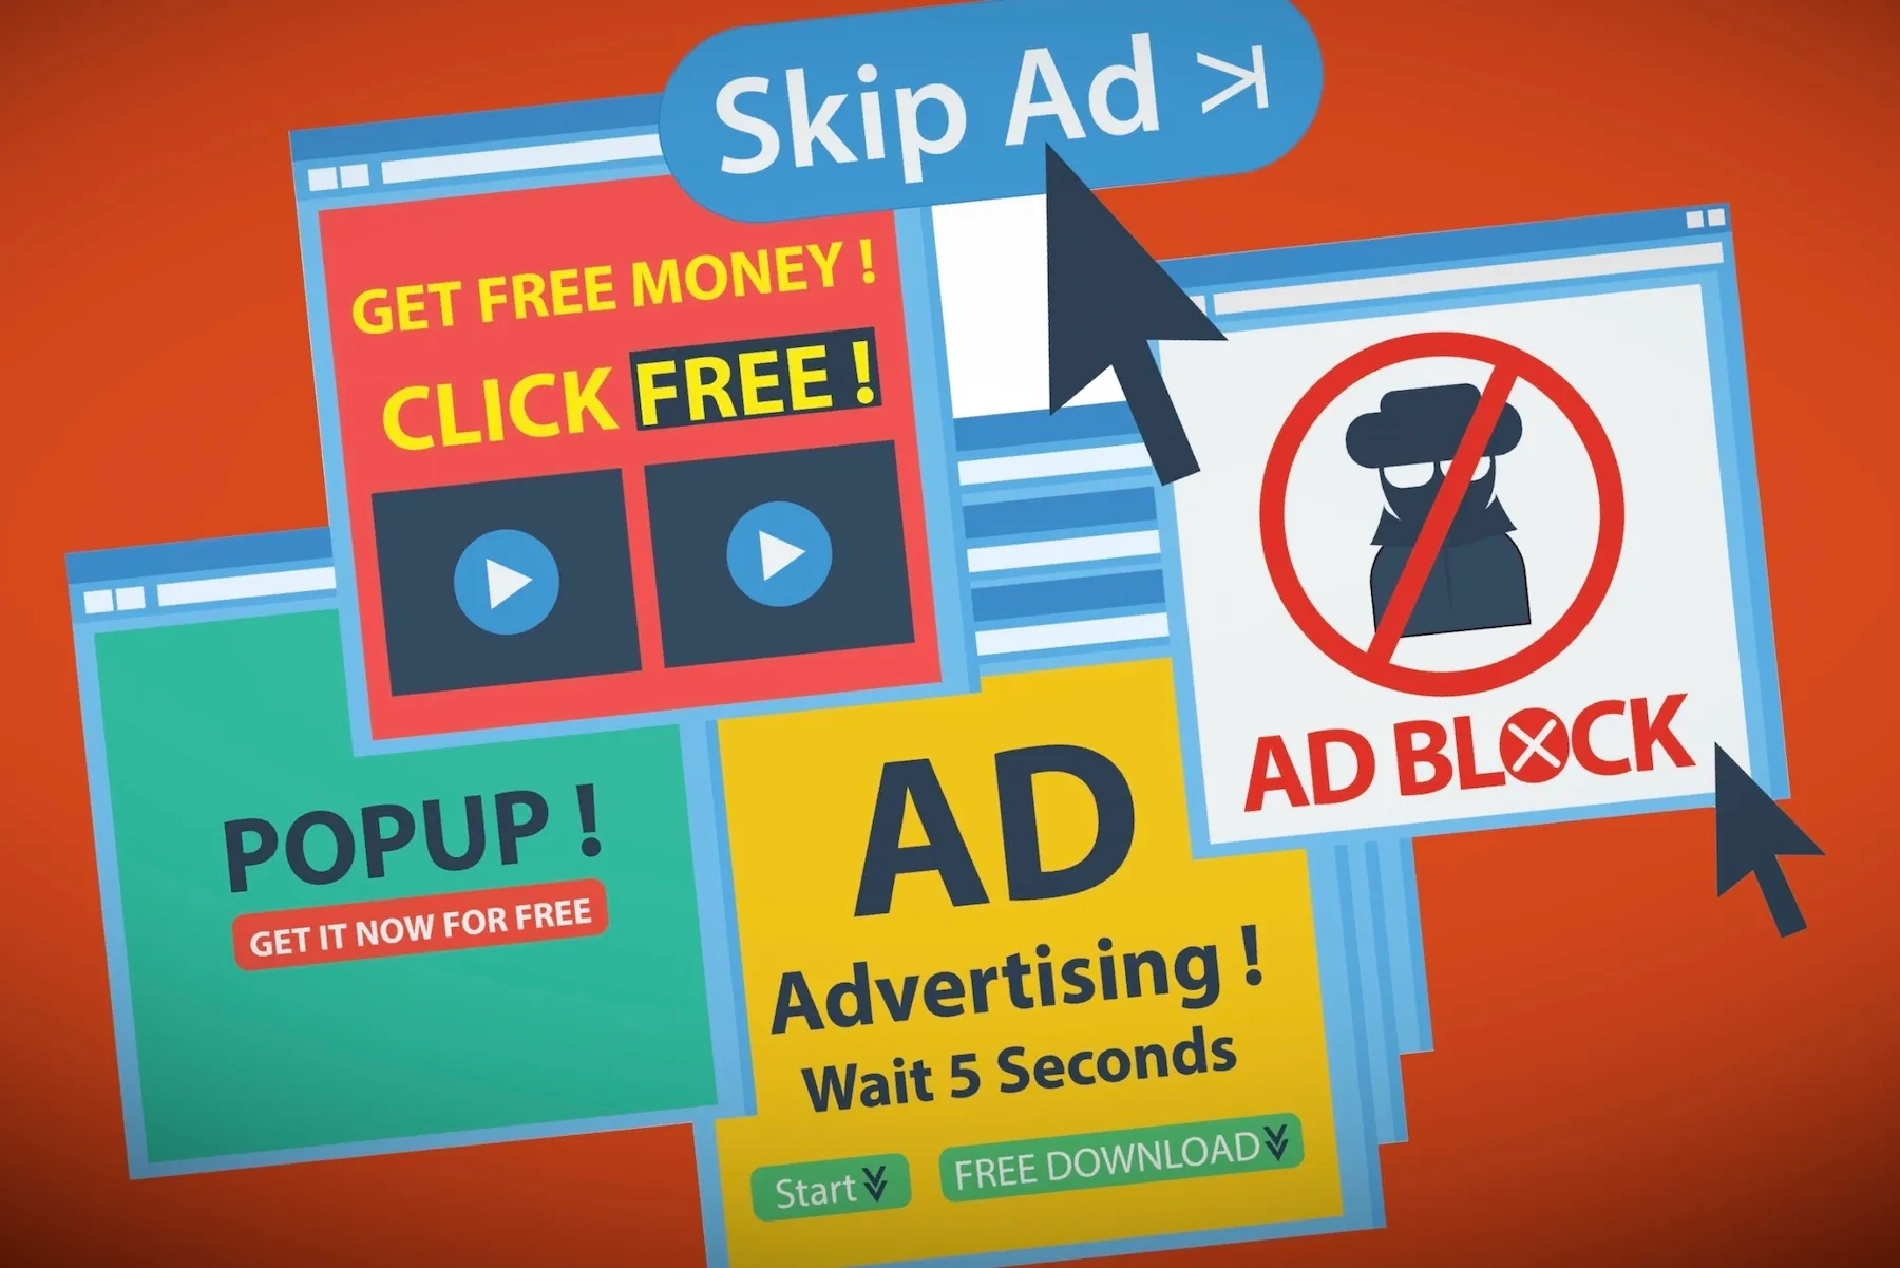 YouTube thử nghiệm phương pháp quảng cáo mới nhằm 'diệt trừ tận gốc' trình chặn quảng cáo adblock?